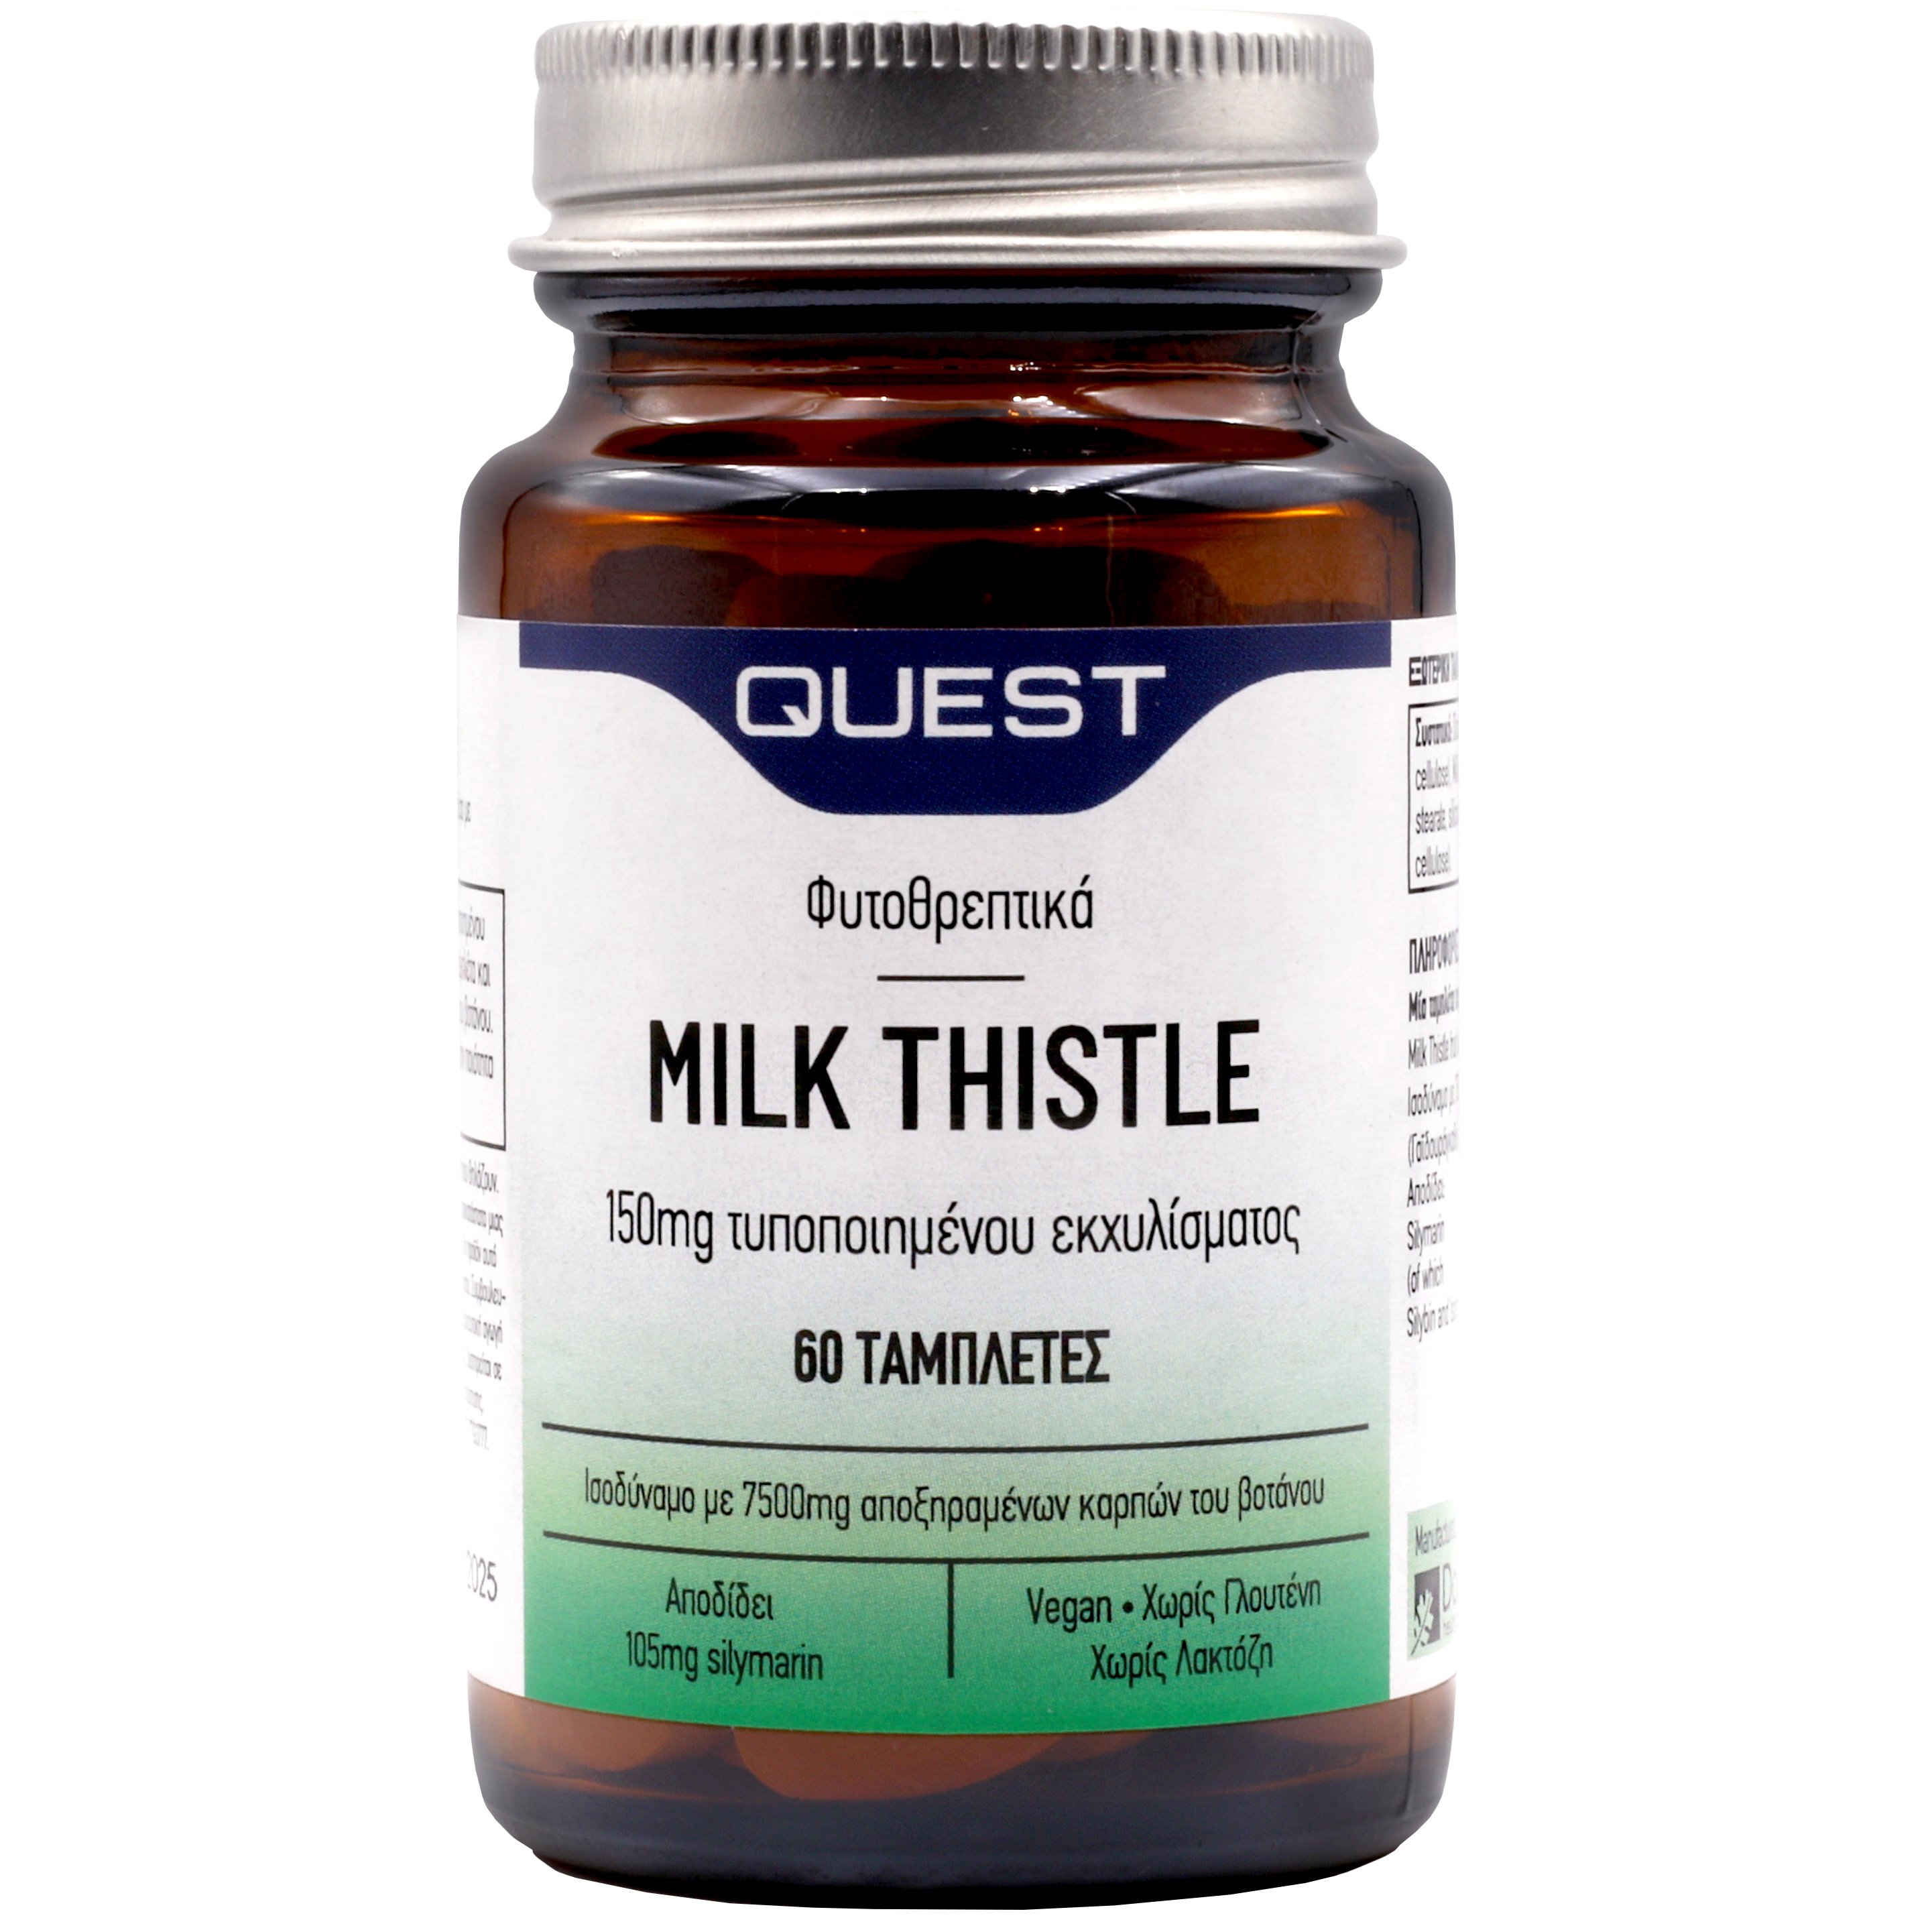 Quest Milk Thistle 150mg Extract Συμπλήρωμα Διατροφής για την Καλή Λειτουργία του Ήπατος 60tabs